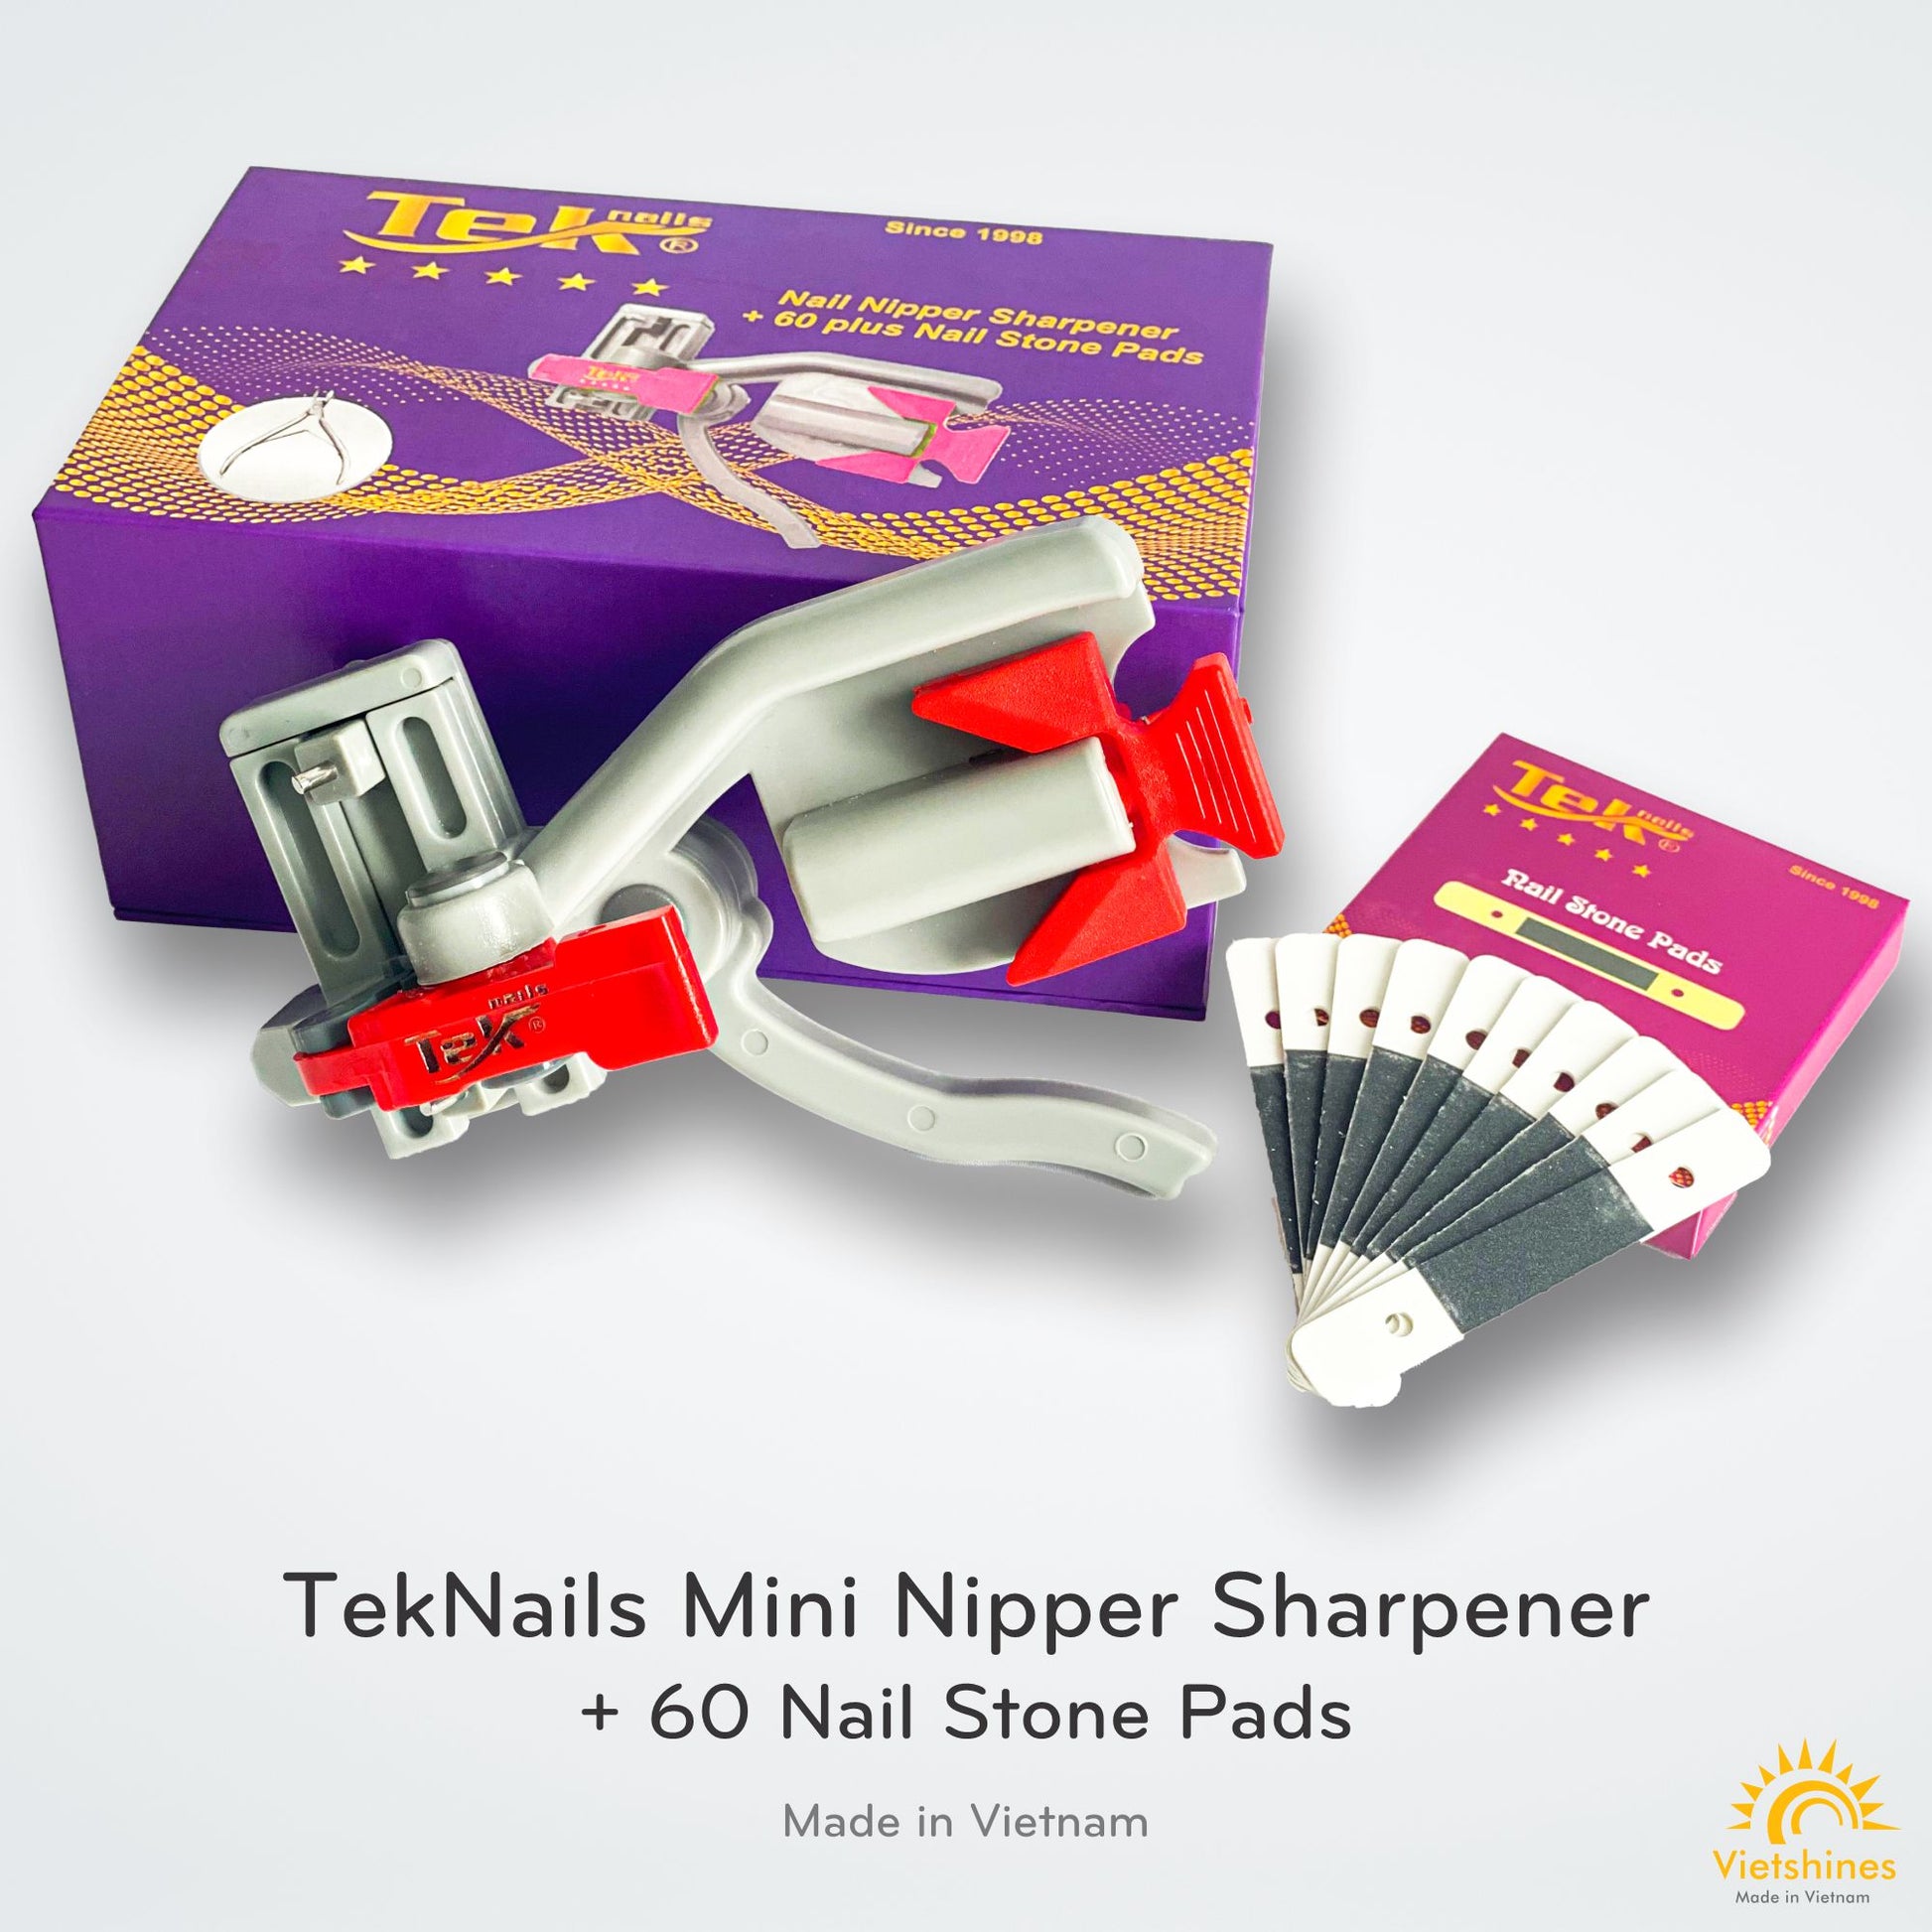 Bạn đang tìm kiếm một sản phẩm chất lượng cao để làm sạch các dụng cụ nail của bạn? Với TekNails mini nipper sharpeners, bạn sẽ nhận được một sản phẩm chất lượng và tiện ích giúp giữ lưỡi cắt của các dụng cụ của bạn sắc bén. Hãy xem hình ảnh này để biết thêm chi tiết.